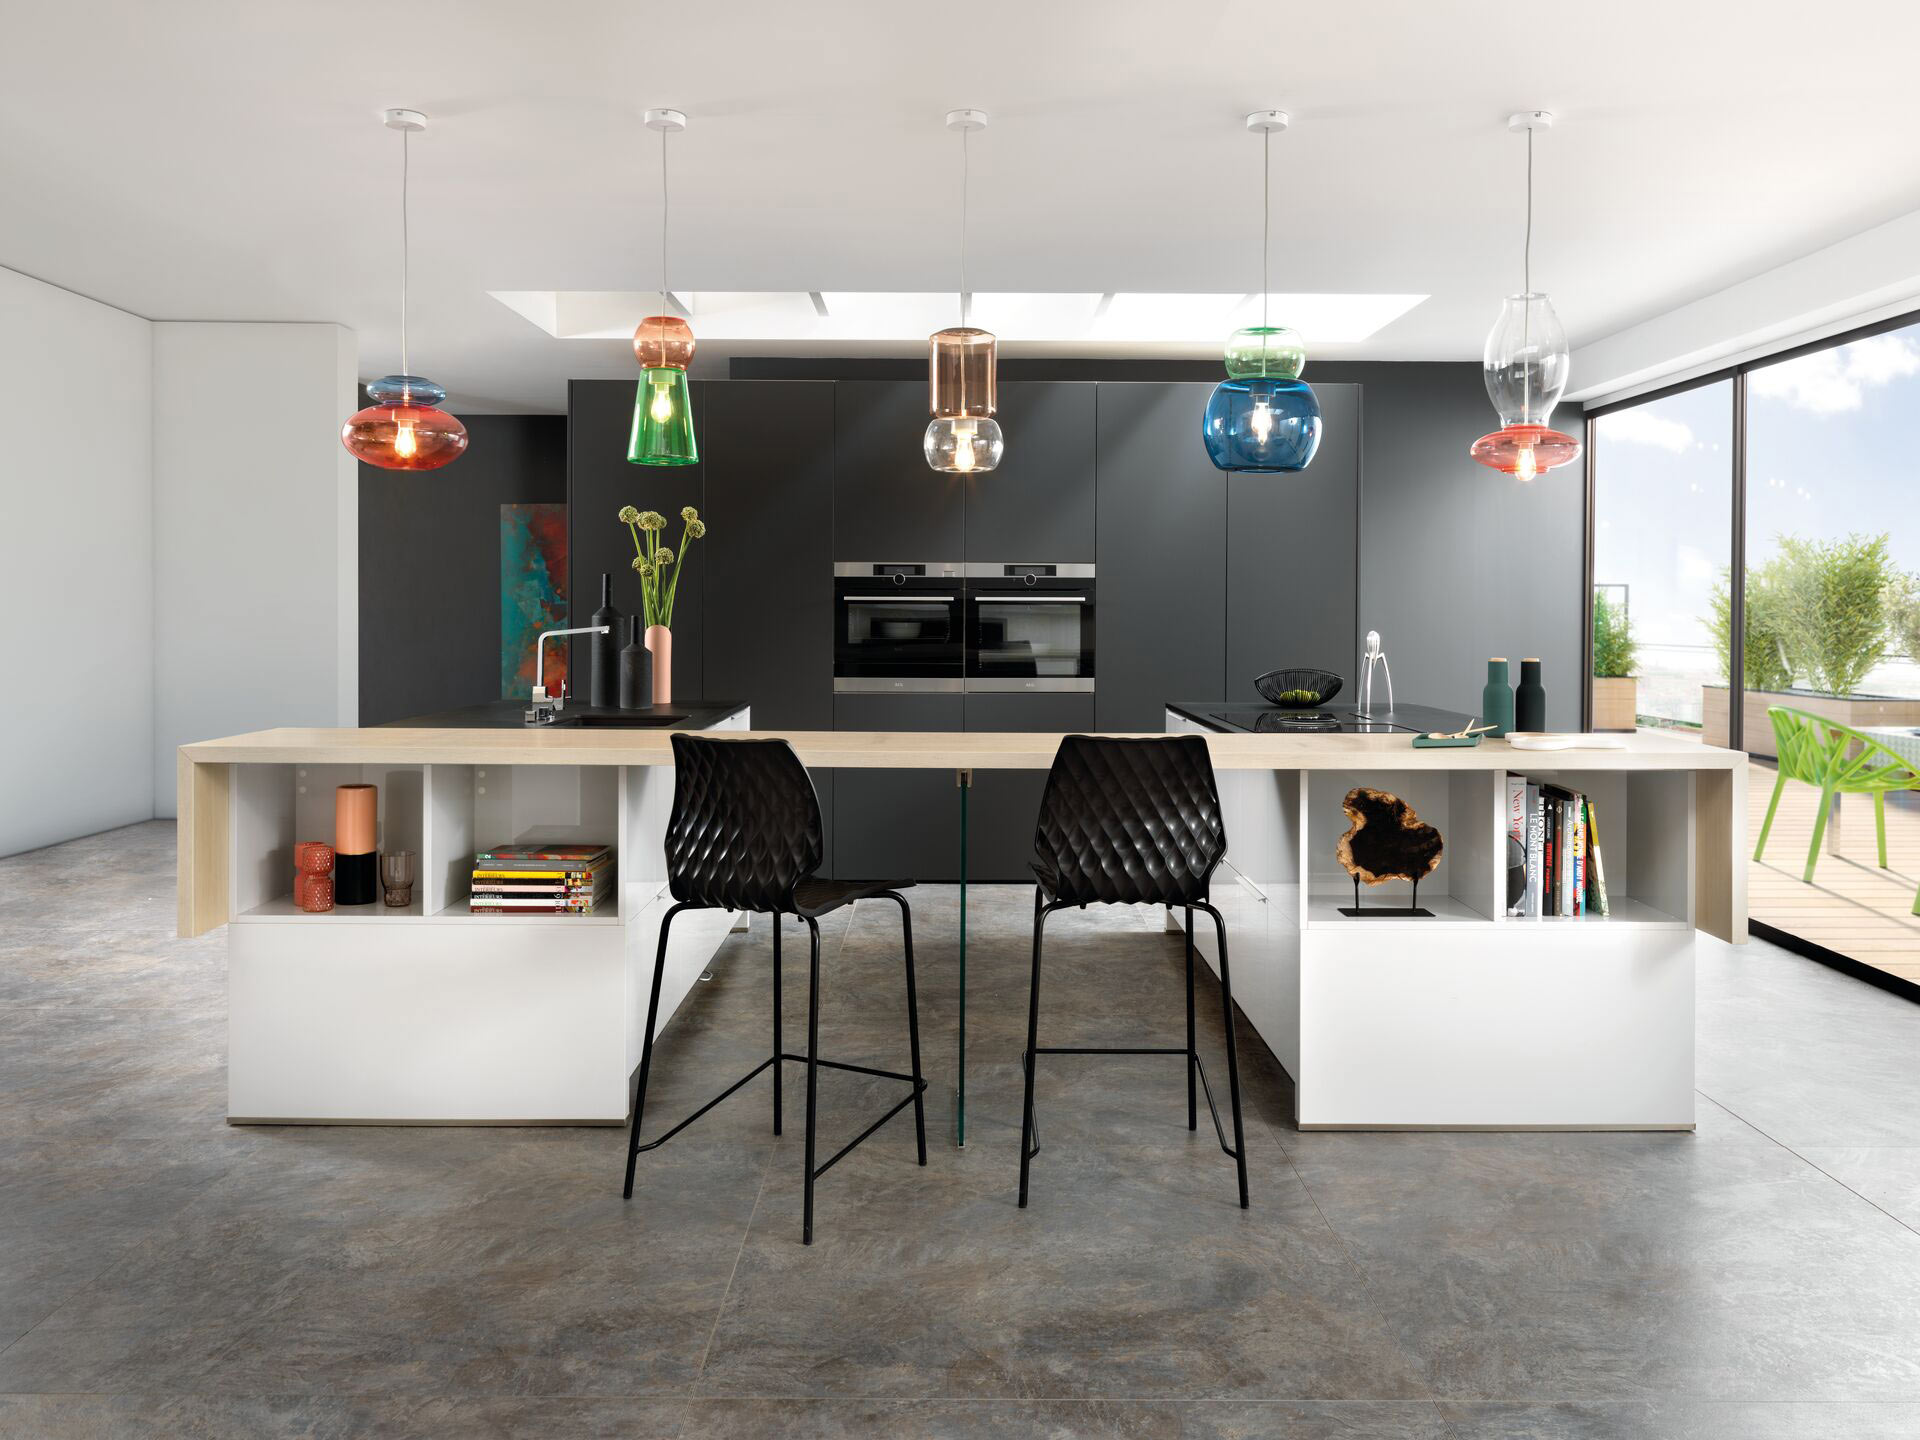 Comment aménager une cuisine avec bar comptoir pour un espace convivial et moderne ?